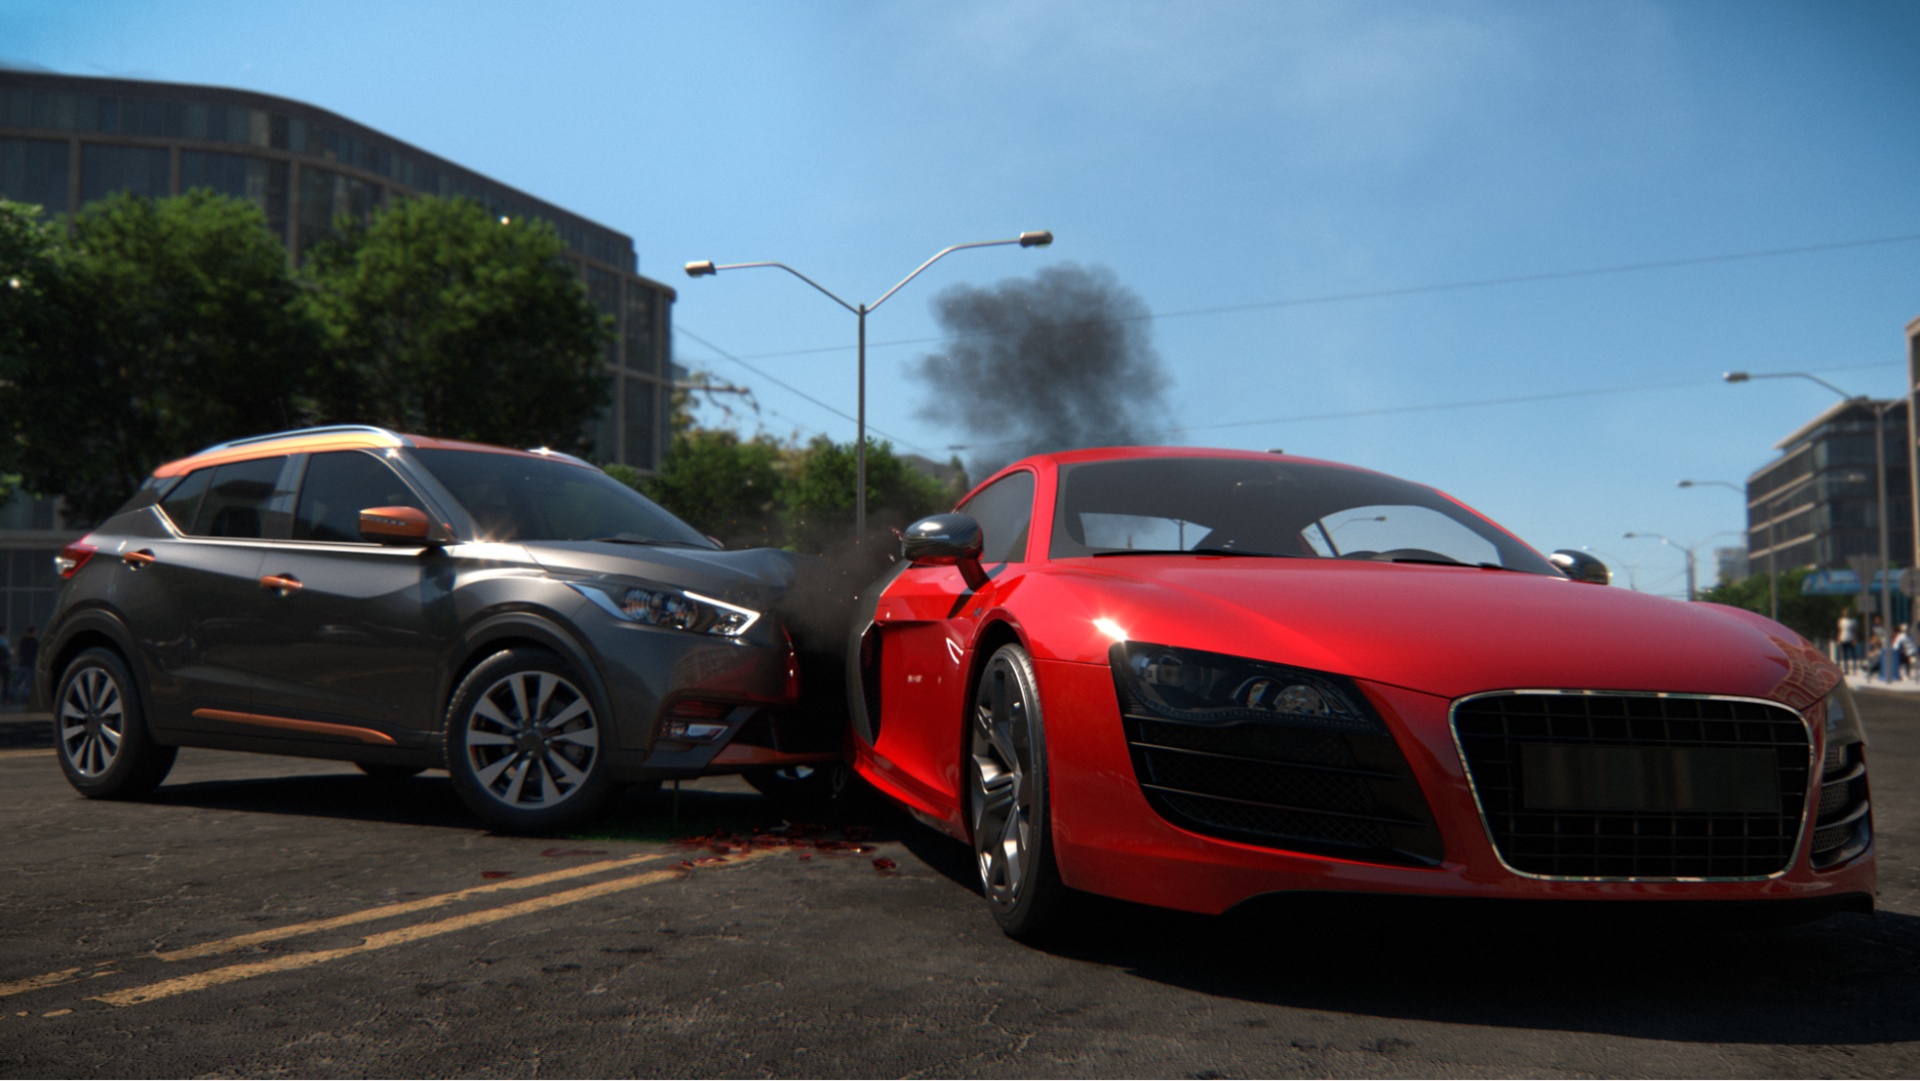 A metallic gray car crashes into a red car on a suburban street